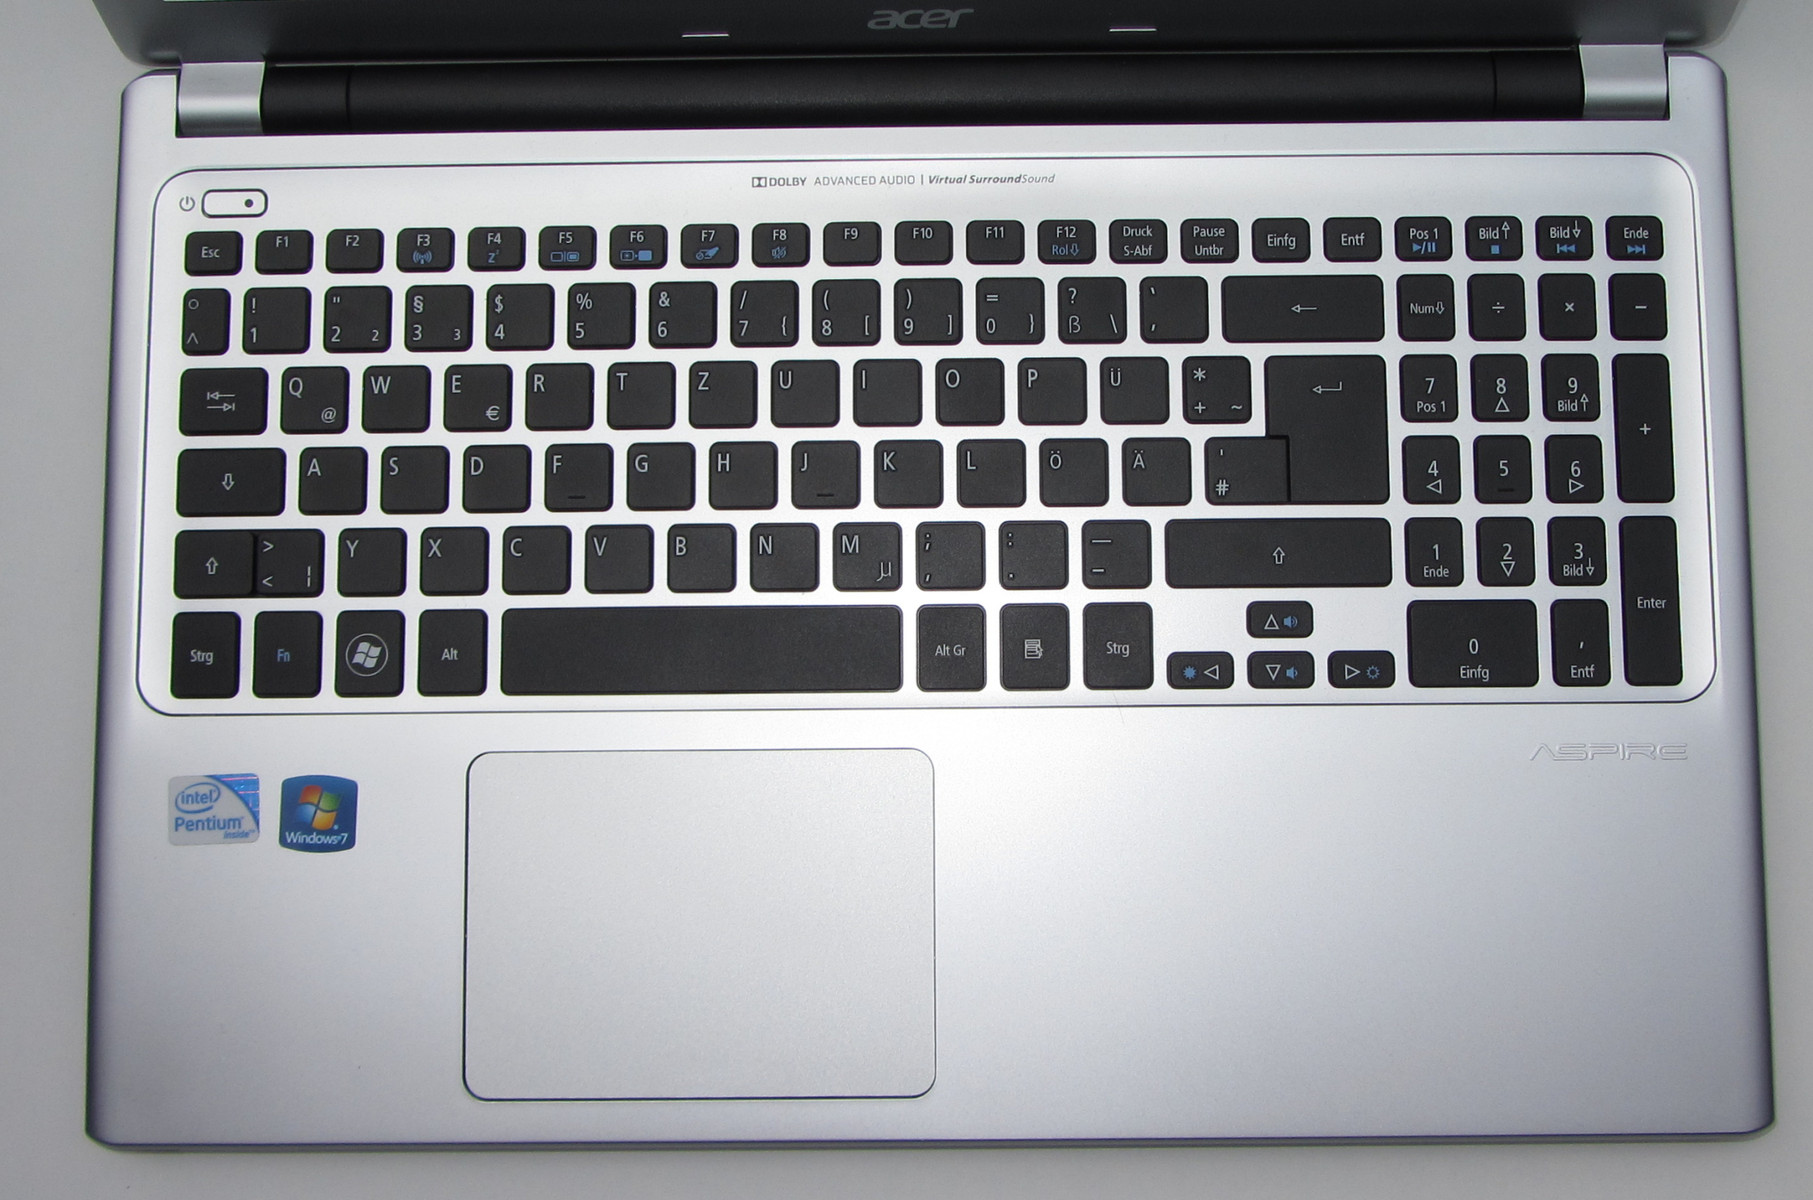 Señal deletrear Que pasa Review Acer Aspire V5-531 Notebook - NotebookCheck.net Reviews